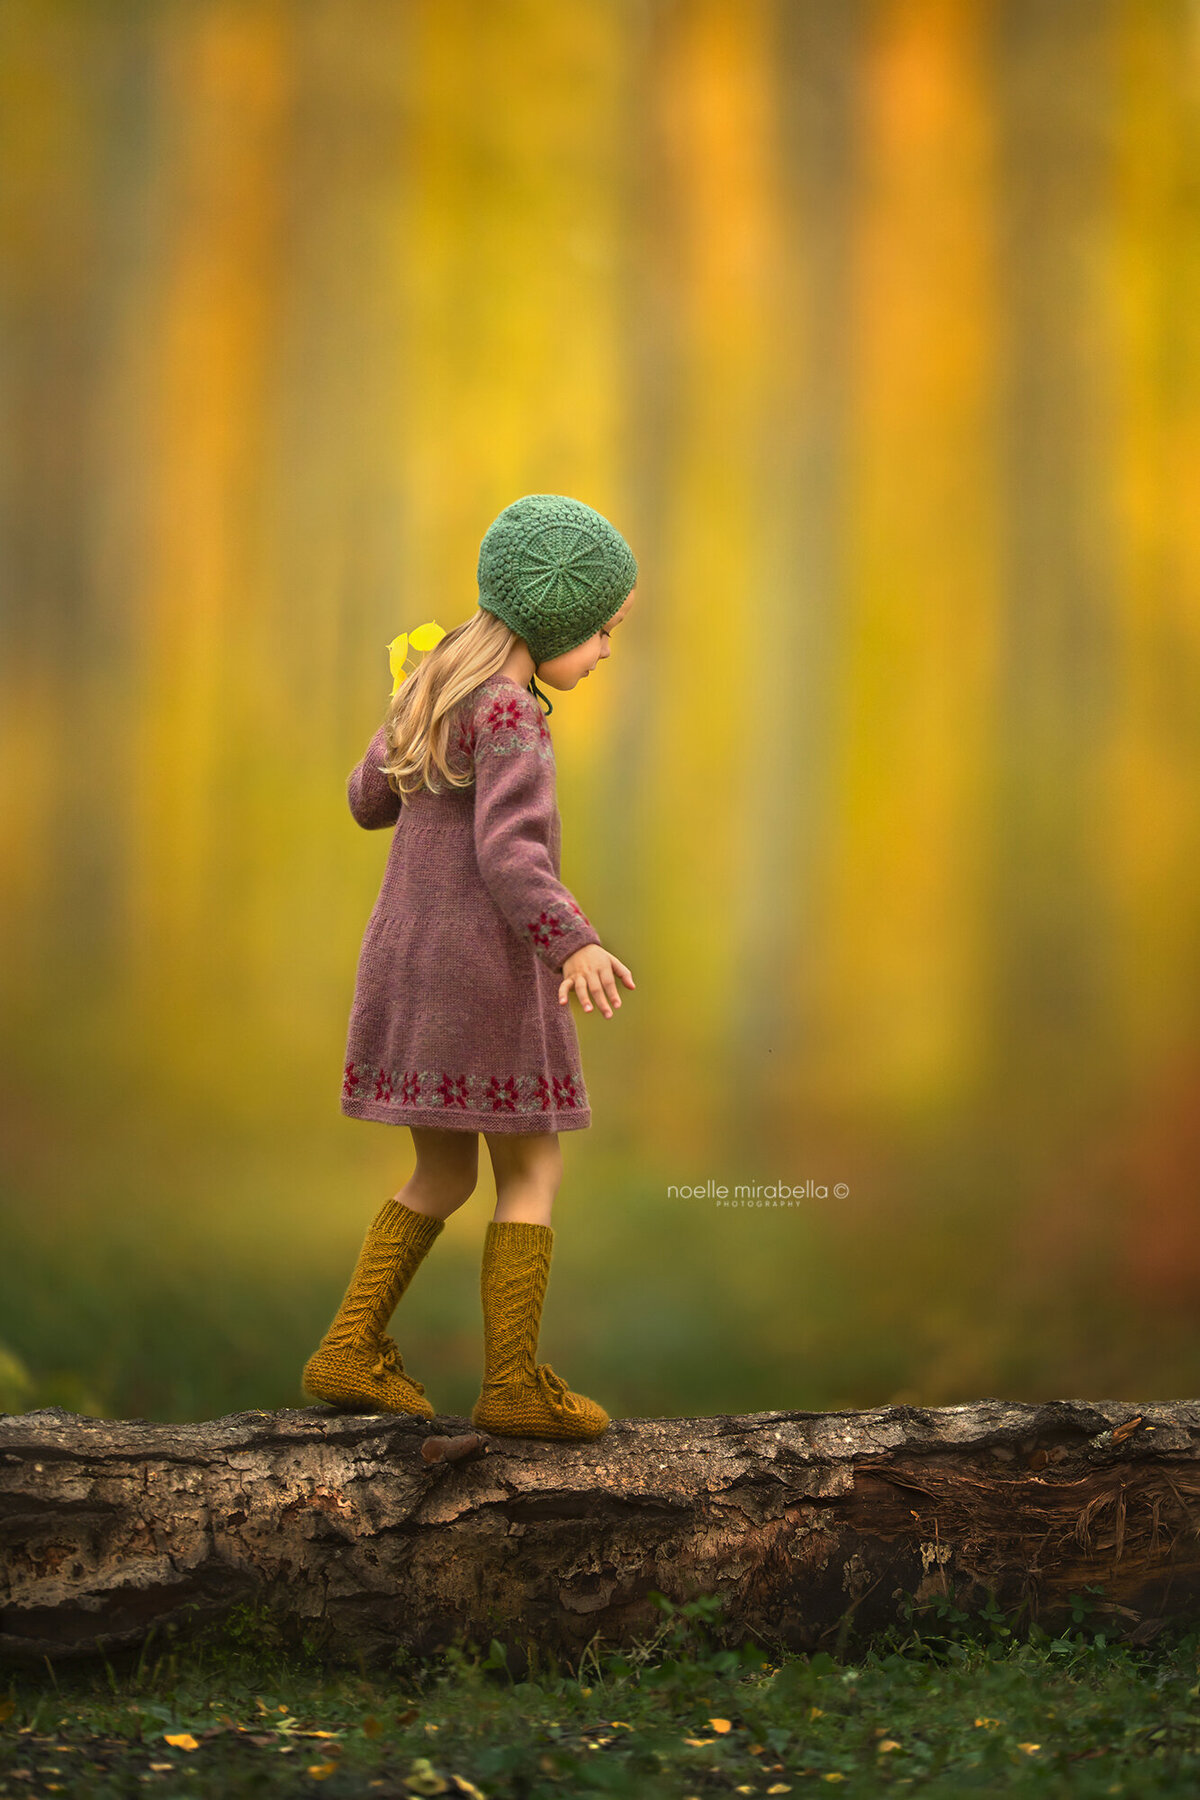 Girl in knit dress walking on a log in autumn.